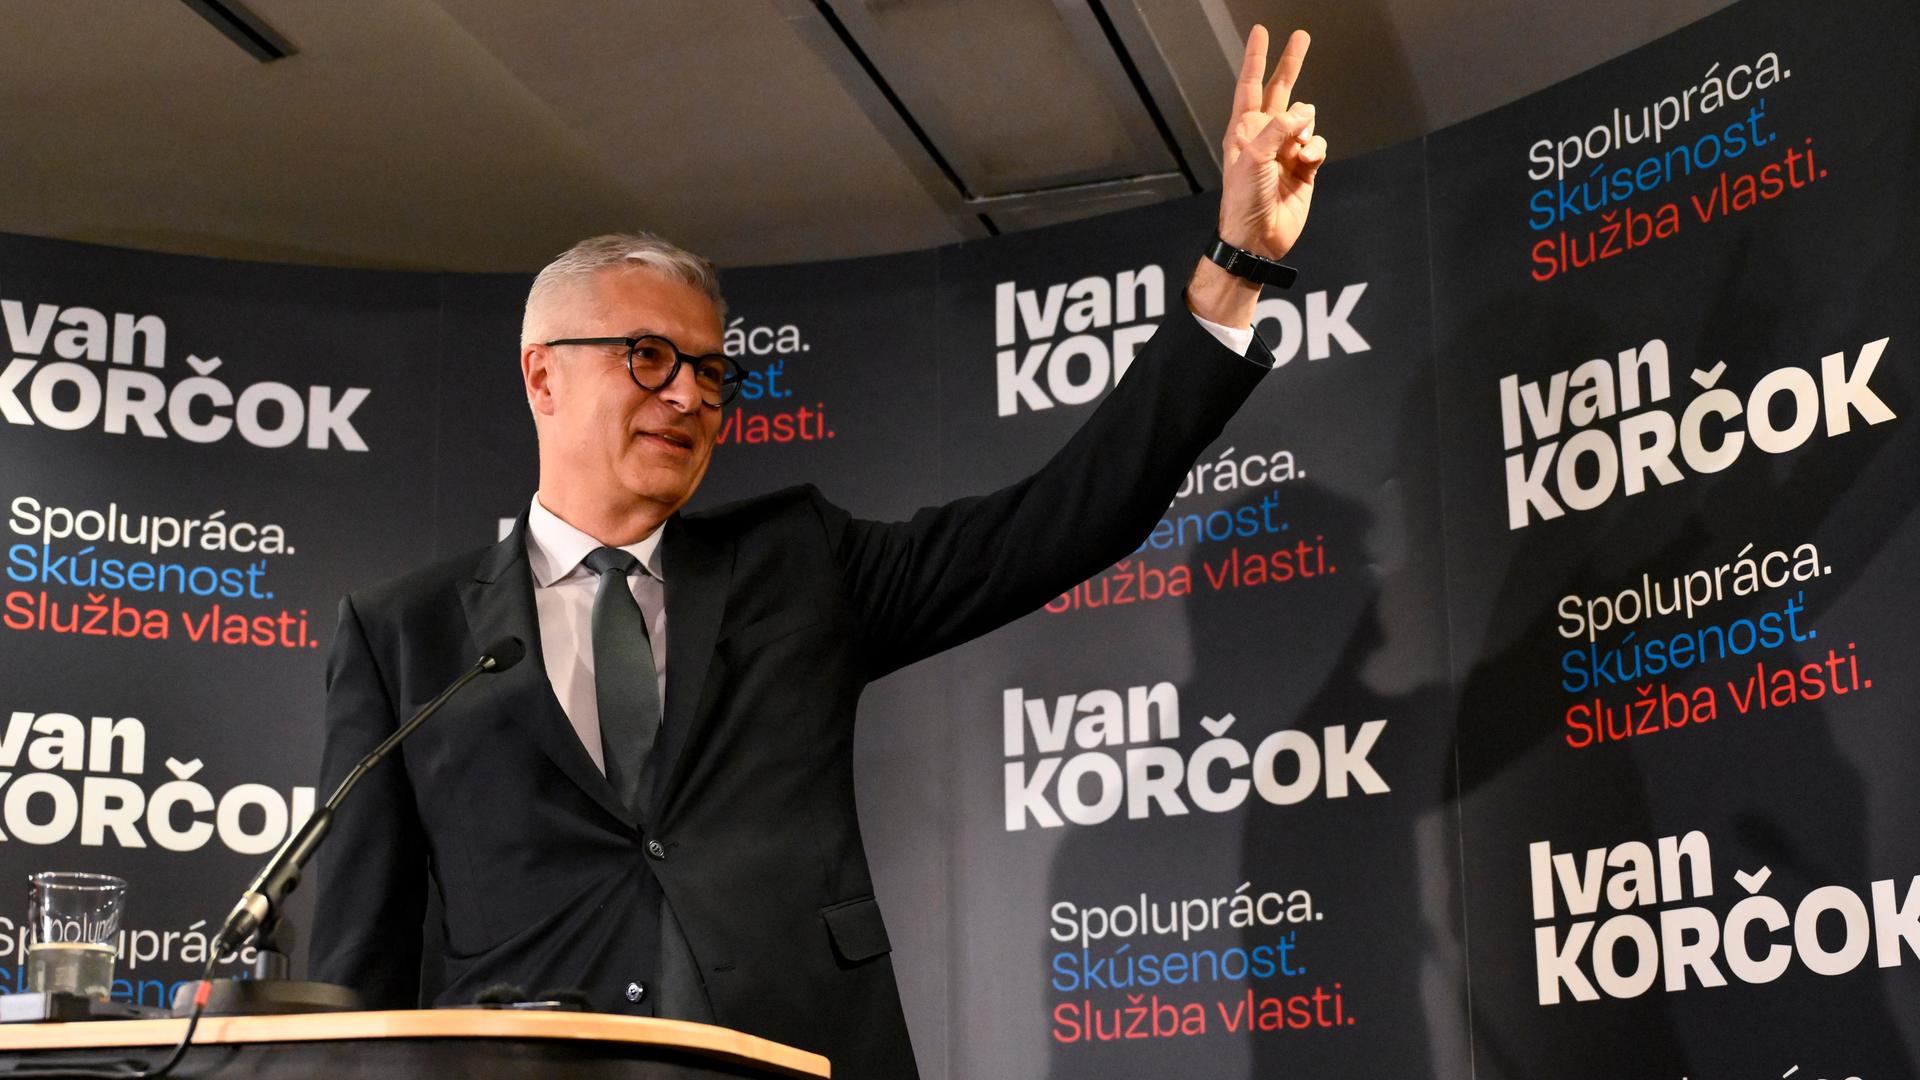 Ivan Korcok, parteiloser Bewerber um das Präsidentenamt in der Slowakei